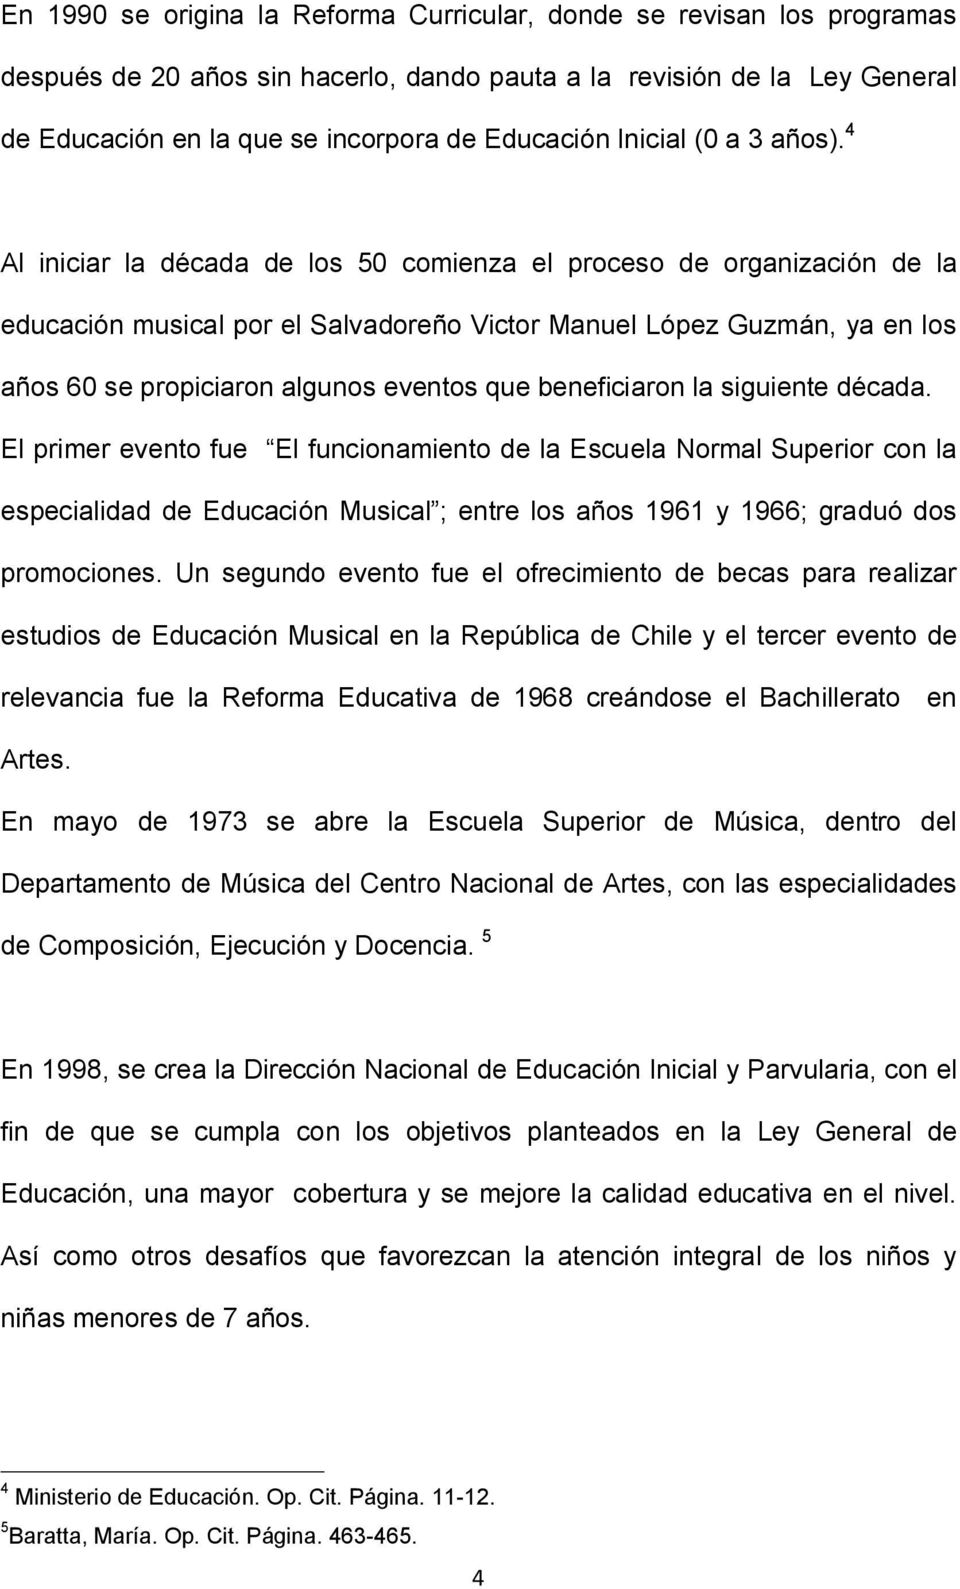 4 Al iniciar la década de los 50 comienza el proceso de organización de la educación musical por el Salvadoreño Victor Manuel López Guzmán, ya en los años 60 se propiciaron algunos eventos que